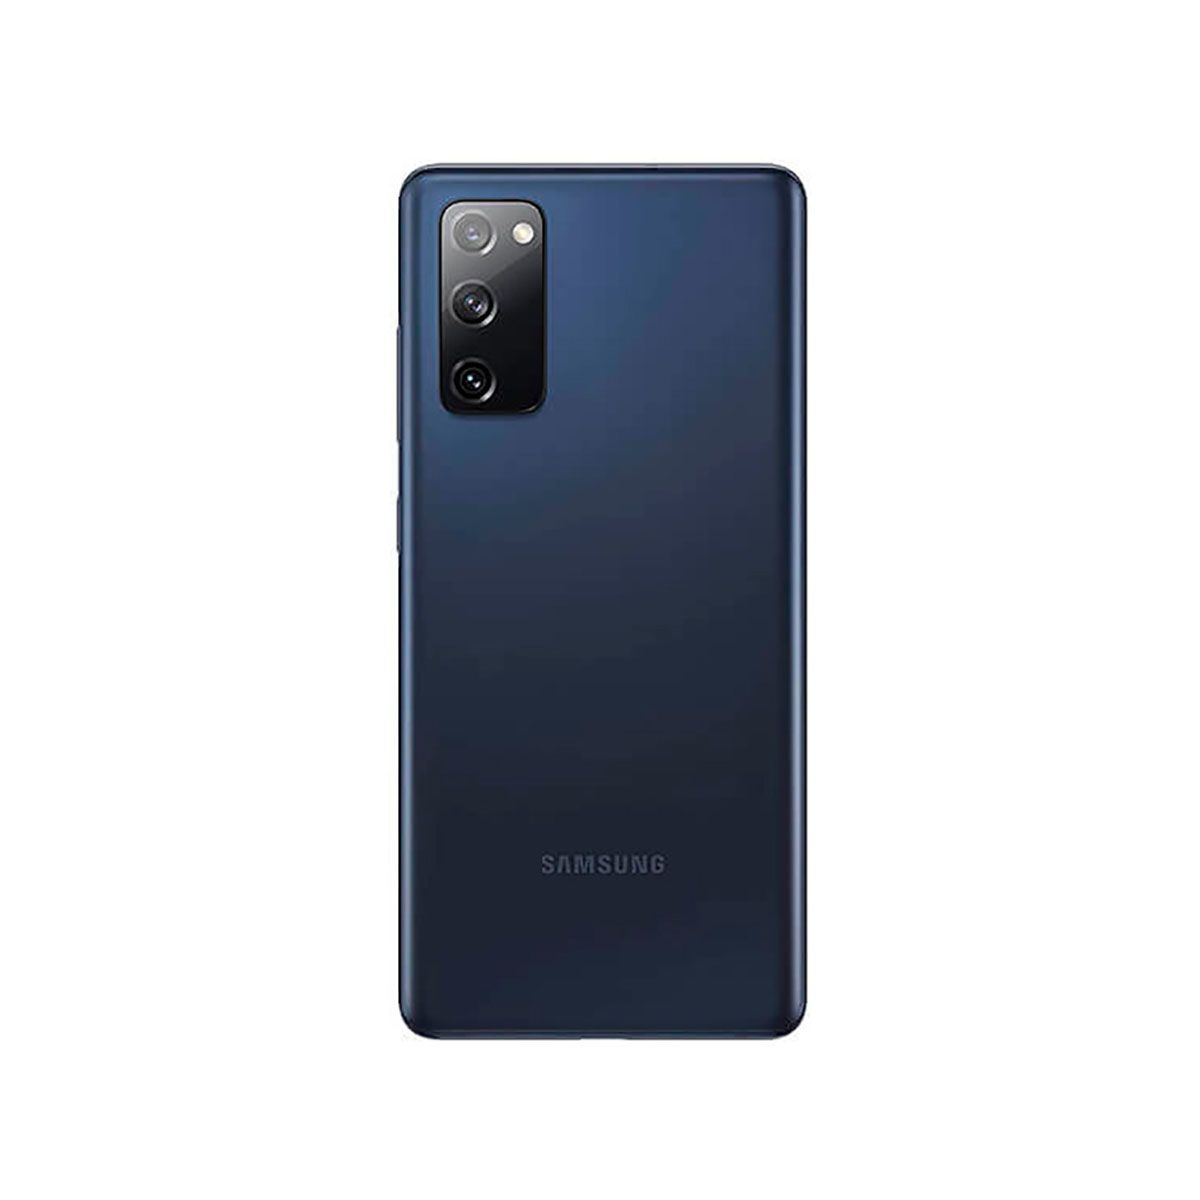 Samsung Galaxy S20 FE 5G 6Go/256Go Bleu (Cloud Navy) Double SIM G781